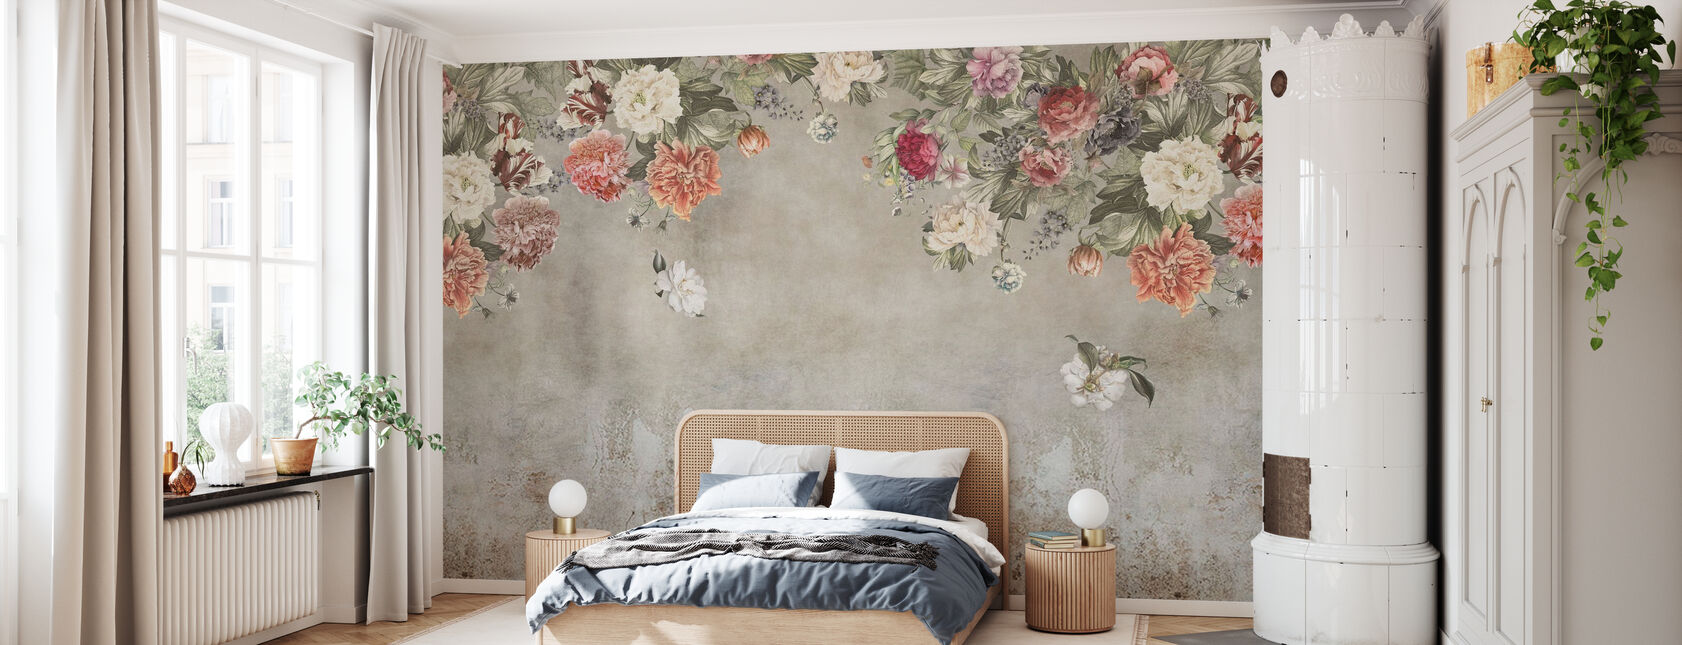 Vintage Blomst Mur - Tapet - Soveværelse